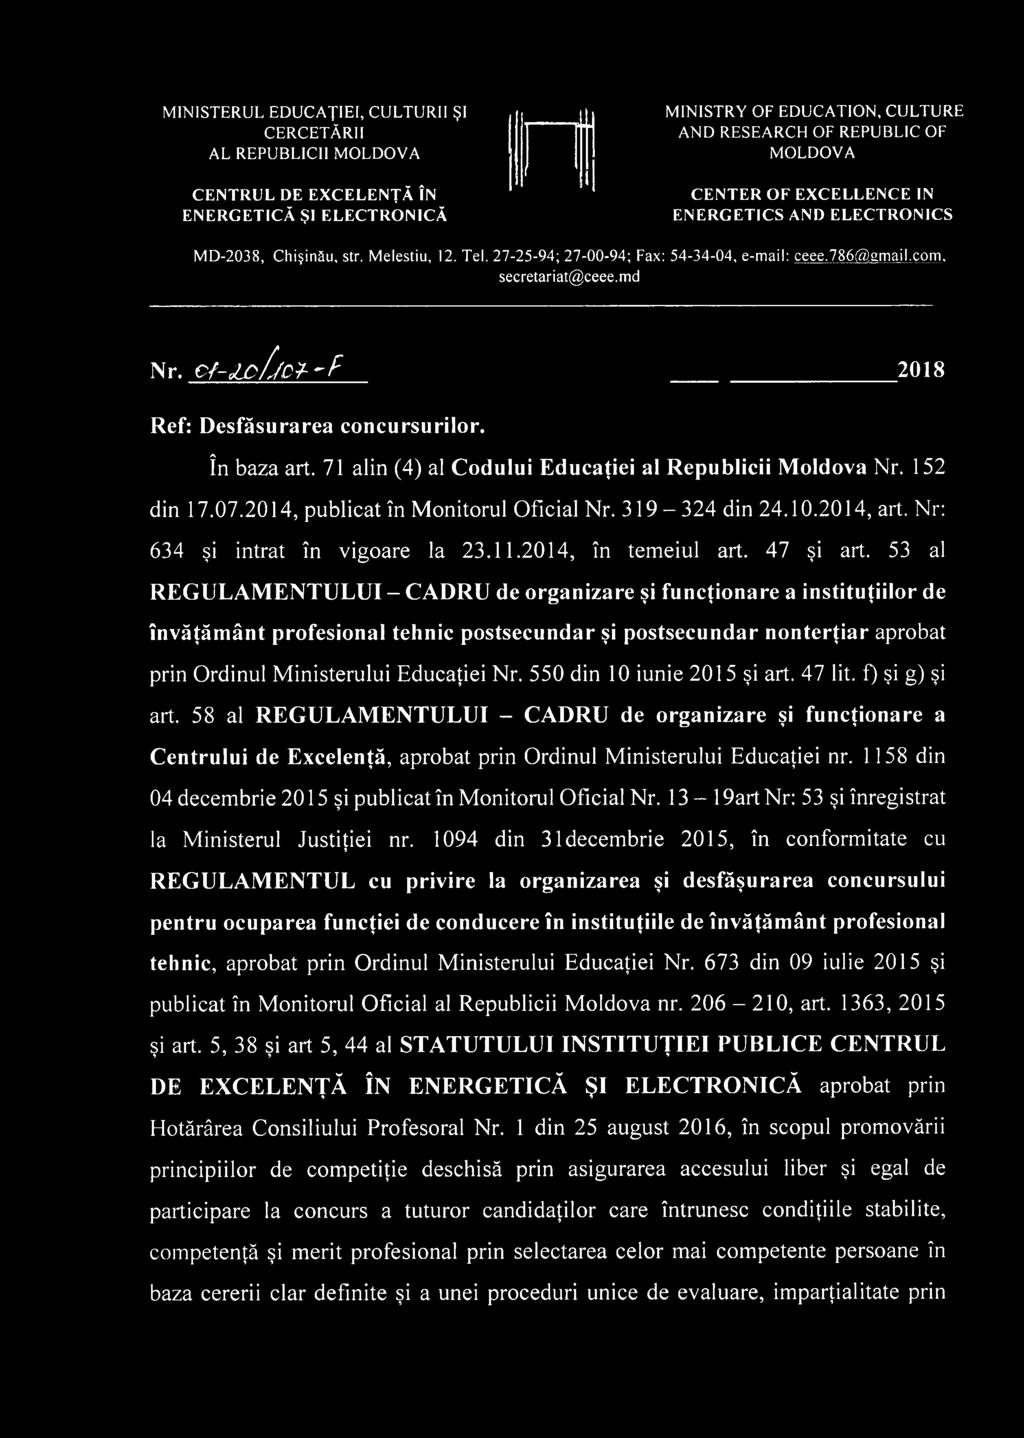 C f-lofjc ţ'f 2018 Ref: Desfăşurarea concursurilor. în baza art. 71 alin (4) al Codului Educaţiei al Republicii Moldova Nr. 152 din 17.07.2014, publicat în Monitorul Oficial Nr. 319-324 din 24.10.